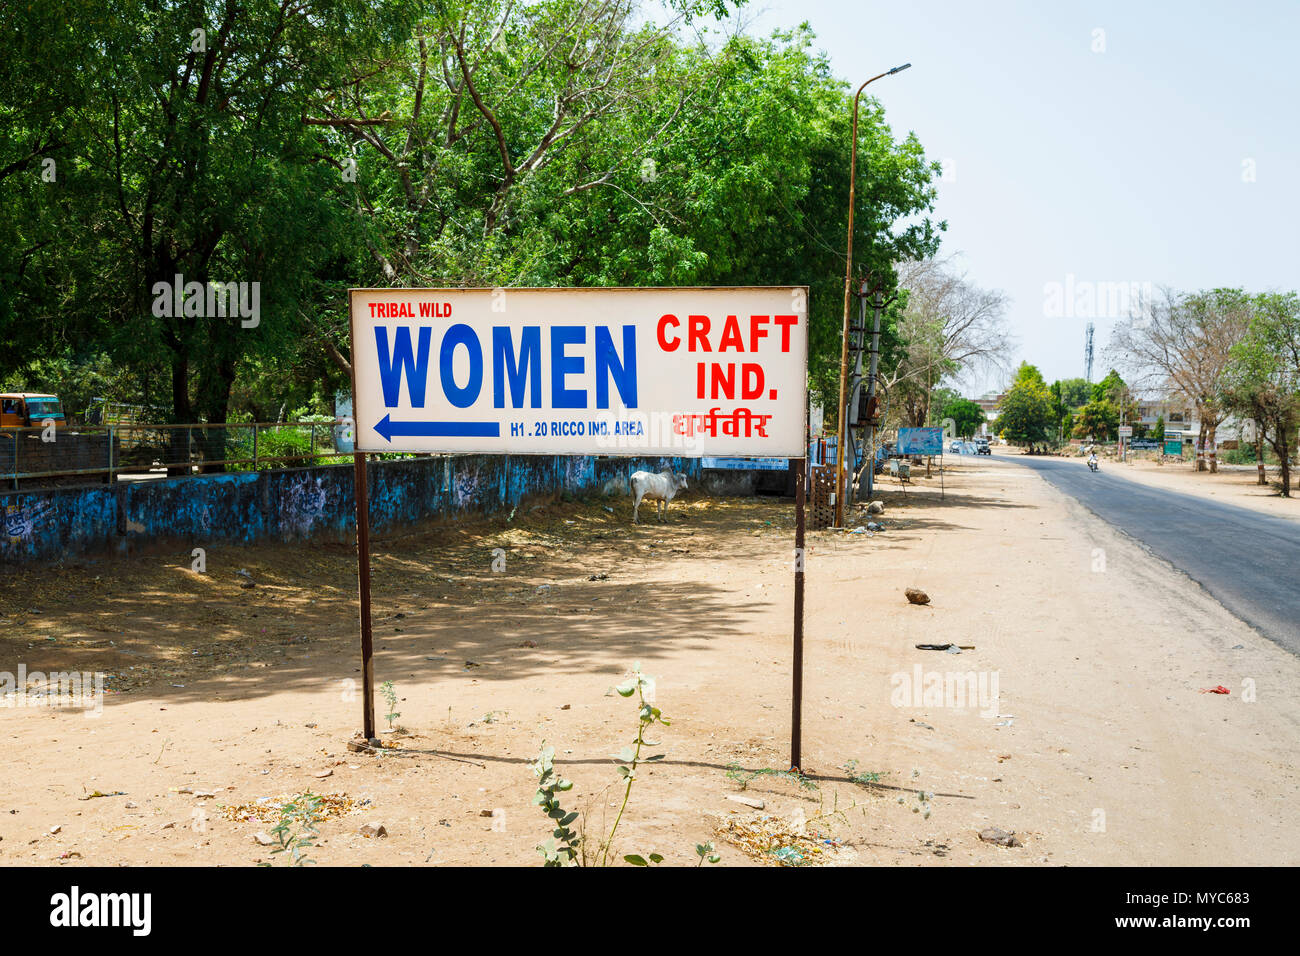 Cartello stradale pubblicità Tribal Wild donne Craft, artigianato locale, Sawai Madhopur città vicino al Parco nazionale di Ranthambore, Rajasthan, India del nord Foto Stock